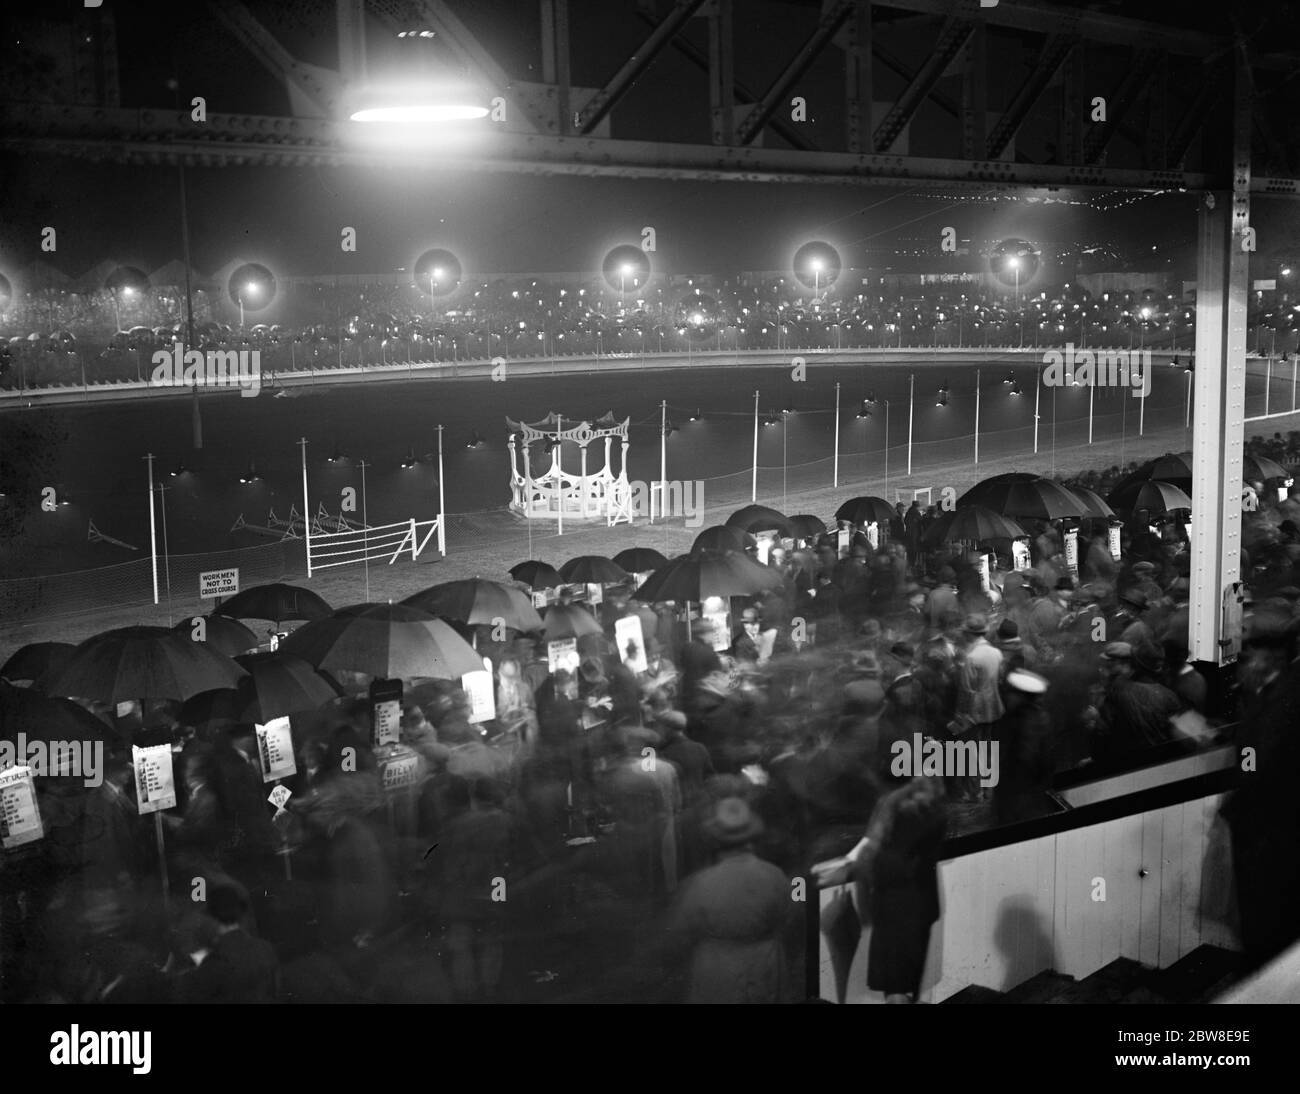 Die neue Windhundstrecke in London wird in Harringay eröffnet. Ein allgemeiner Blick auf die Szene auf der Strecke am Eröffnungsabend, die durch Regen getrübt wurde. Die Richterbox befindet sich in der Mitte des Bildes. Die Startbox ist in der Mitte zu sehen. 14. September 1927 Stockfoto